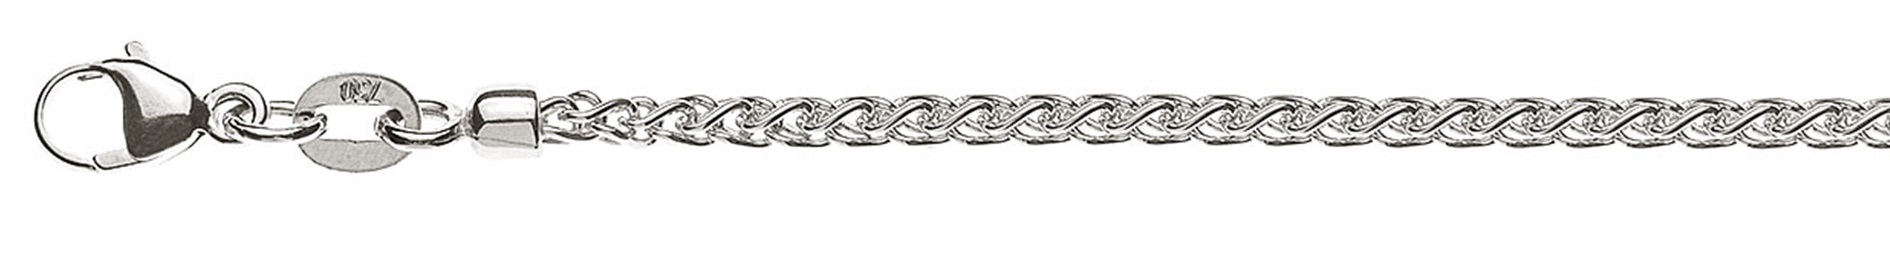 AURONOS Prestige Necklace white gold 18K cable chain 50cm 2.15mm